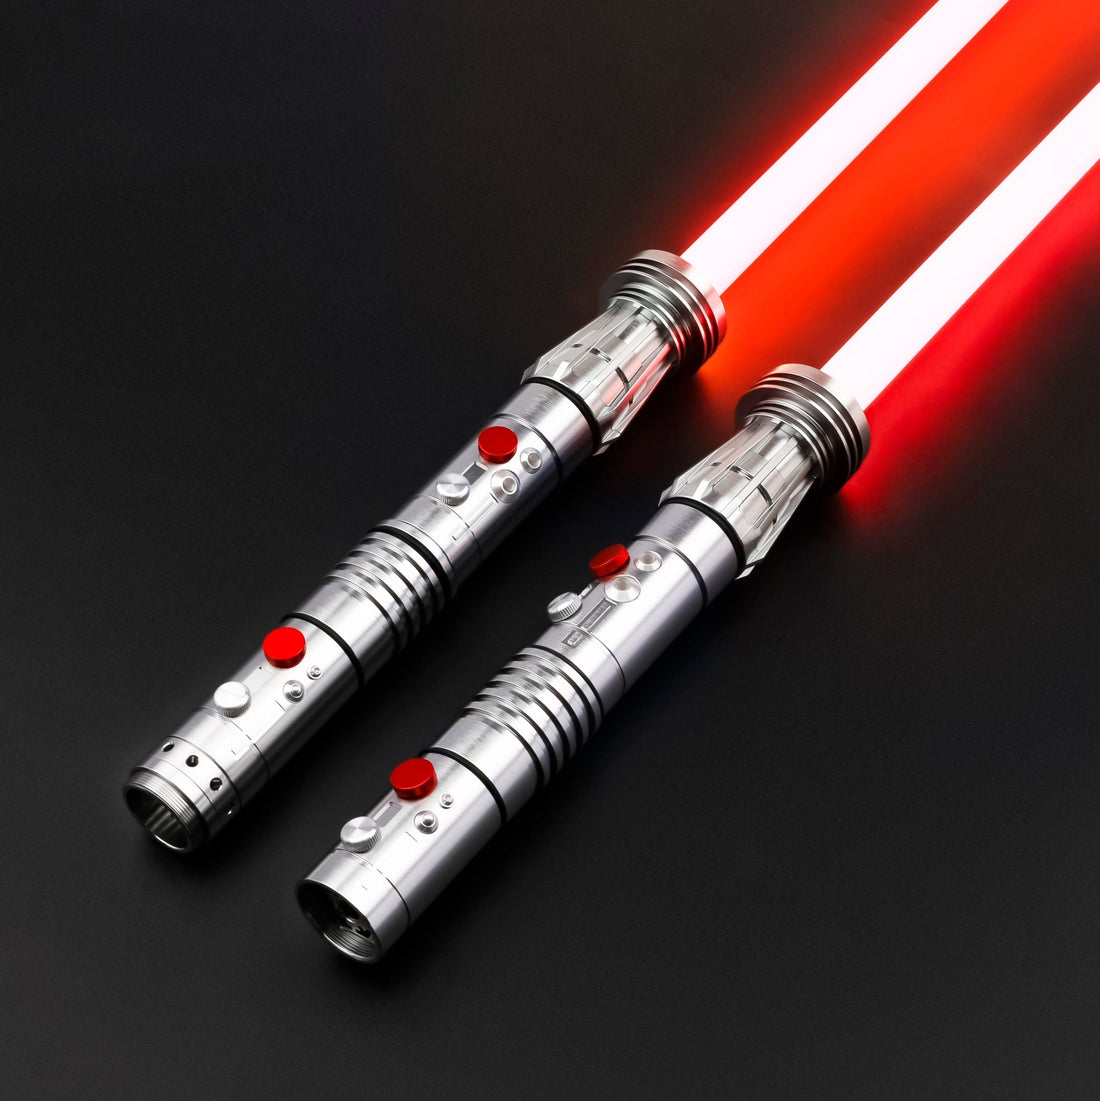 Acheter un Sabre Laser : Le Guide Ultime pour les Véritables Fans de Star Wars - Sabre-Laser-France